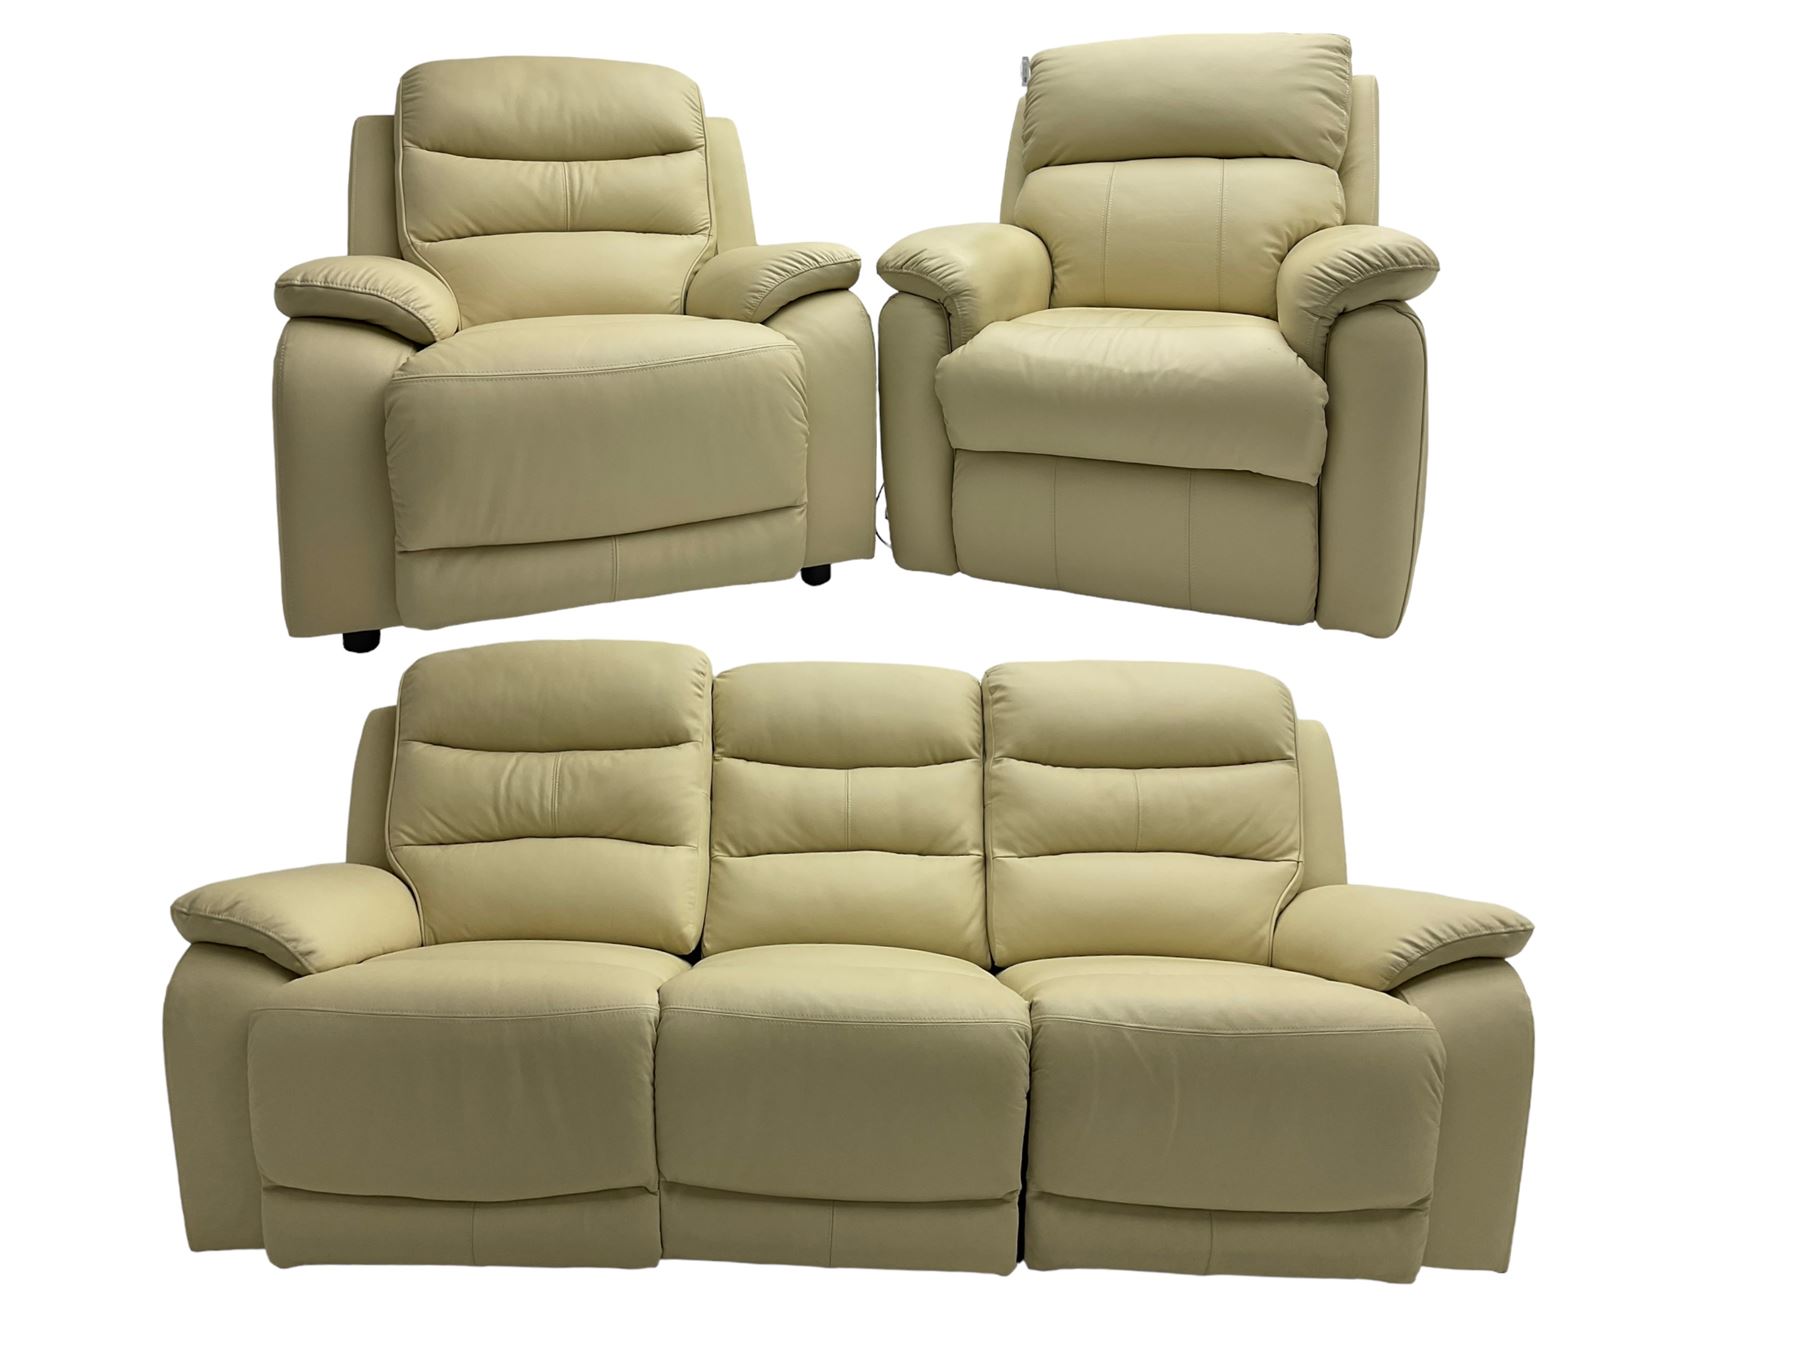 Contemporary three seat reclining sofa